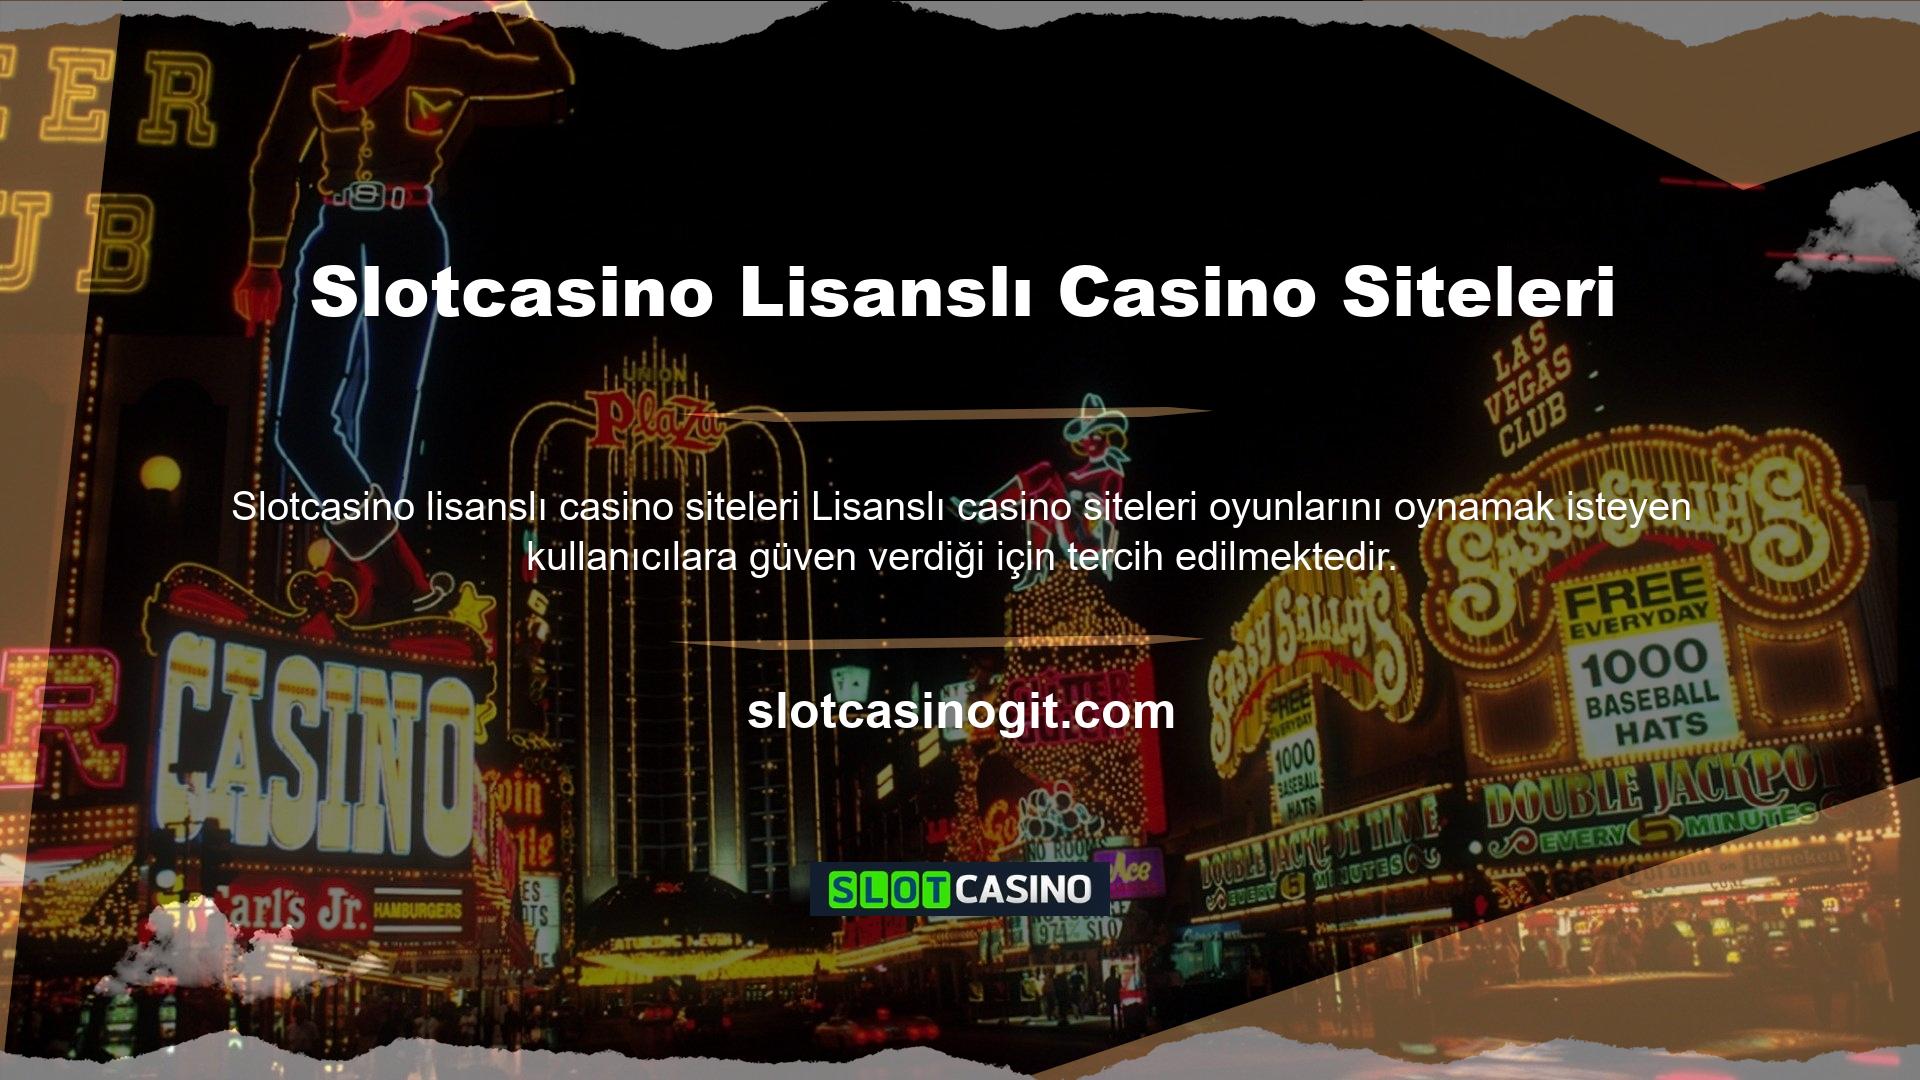 Casino Siteleri, hızlı bir şekilde üye olabileceğiniz ve casino heyecanını yaşayabileceğiniz çevrimiçi bir maceradır